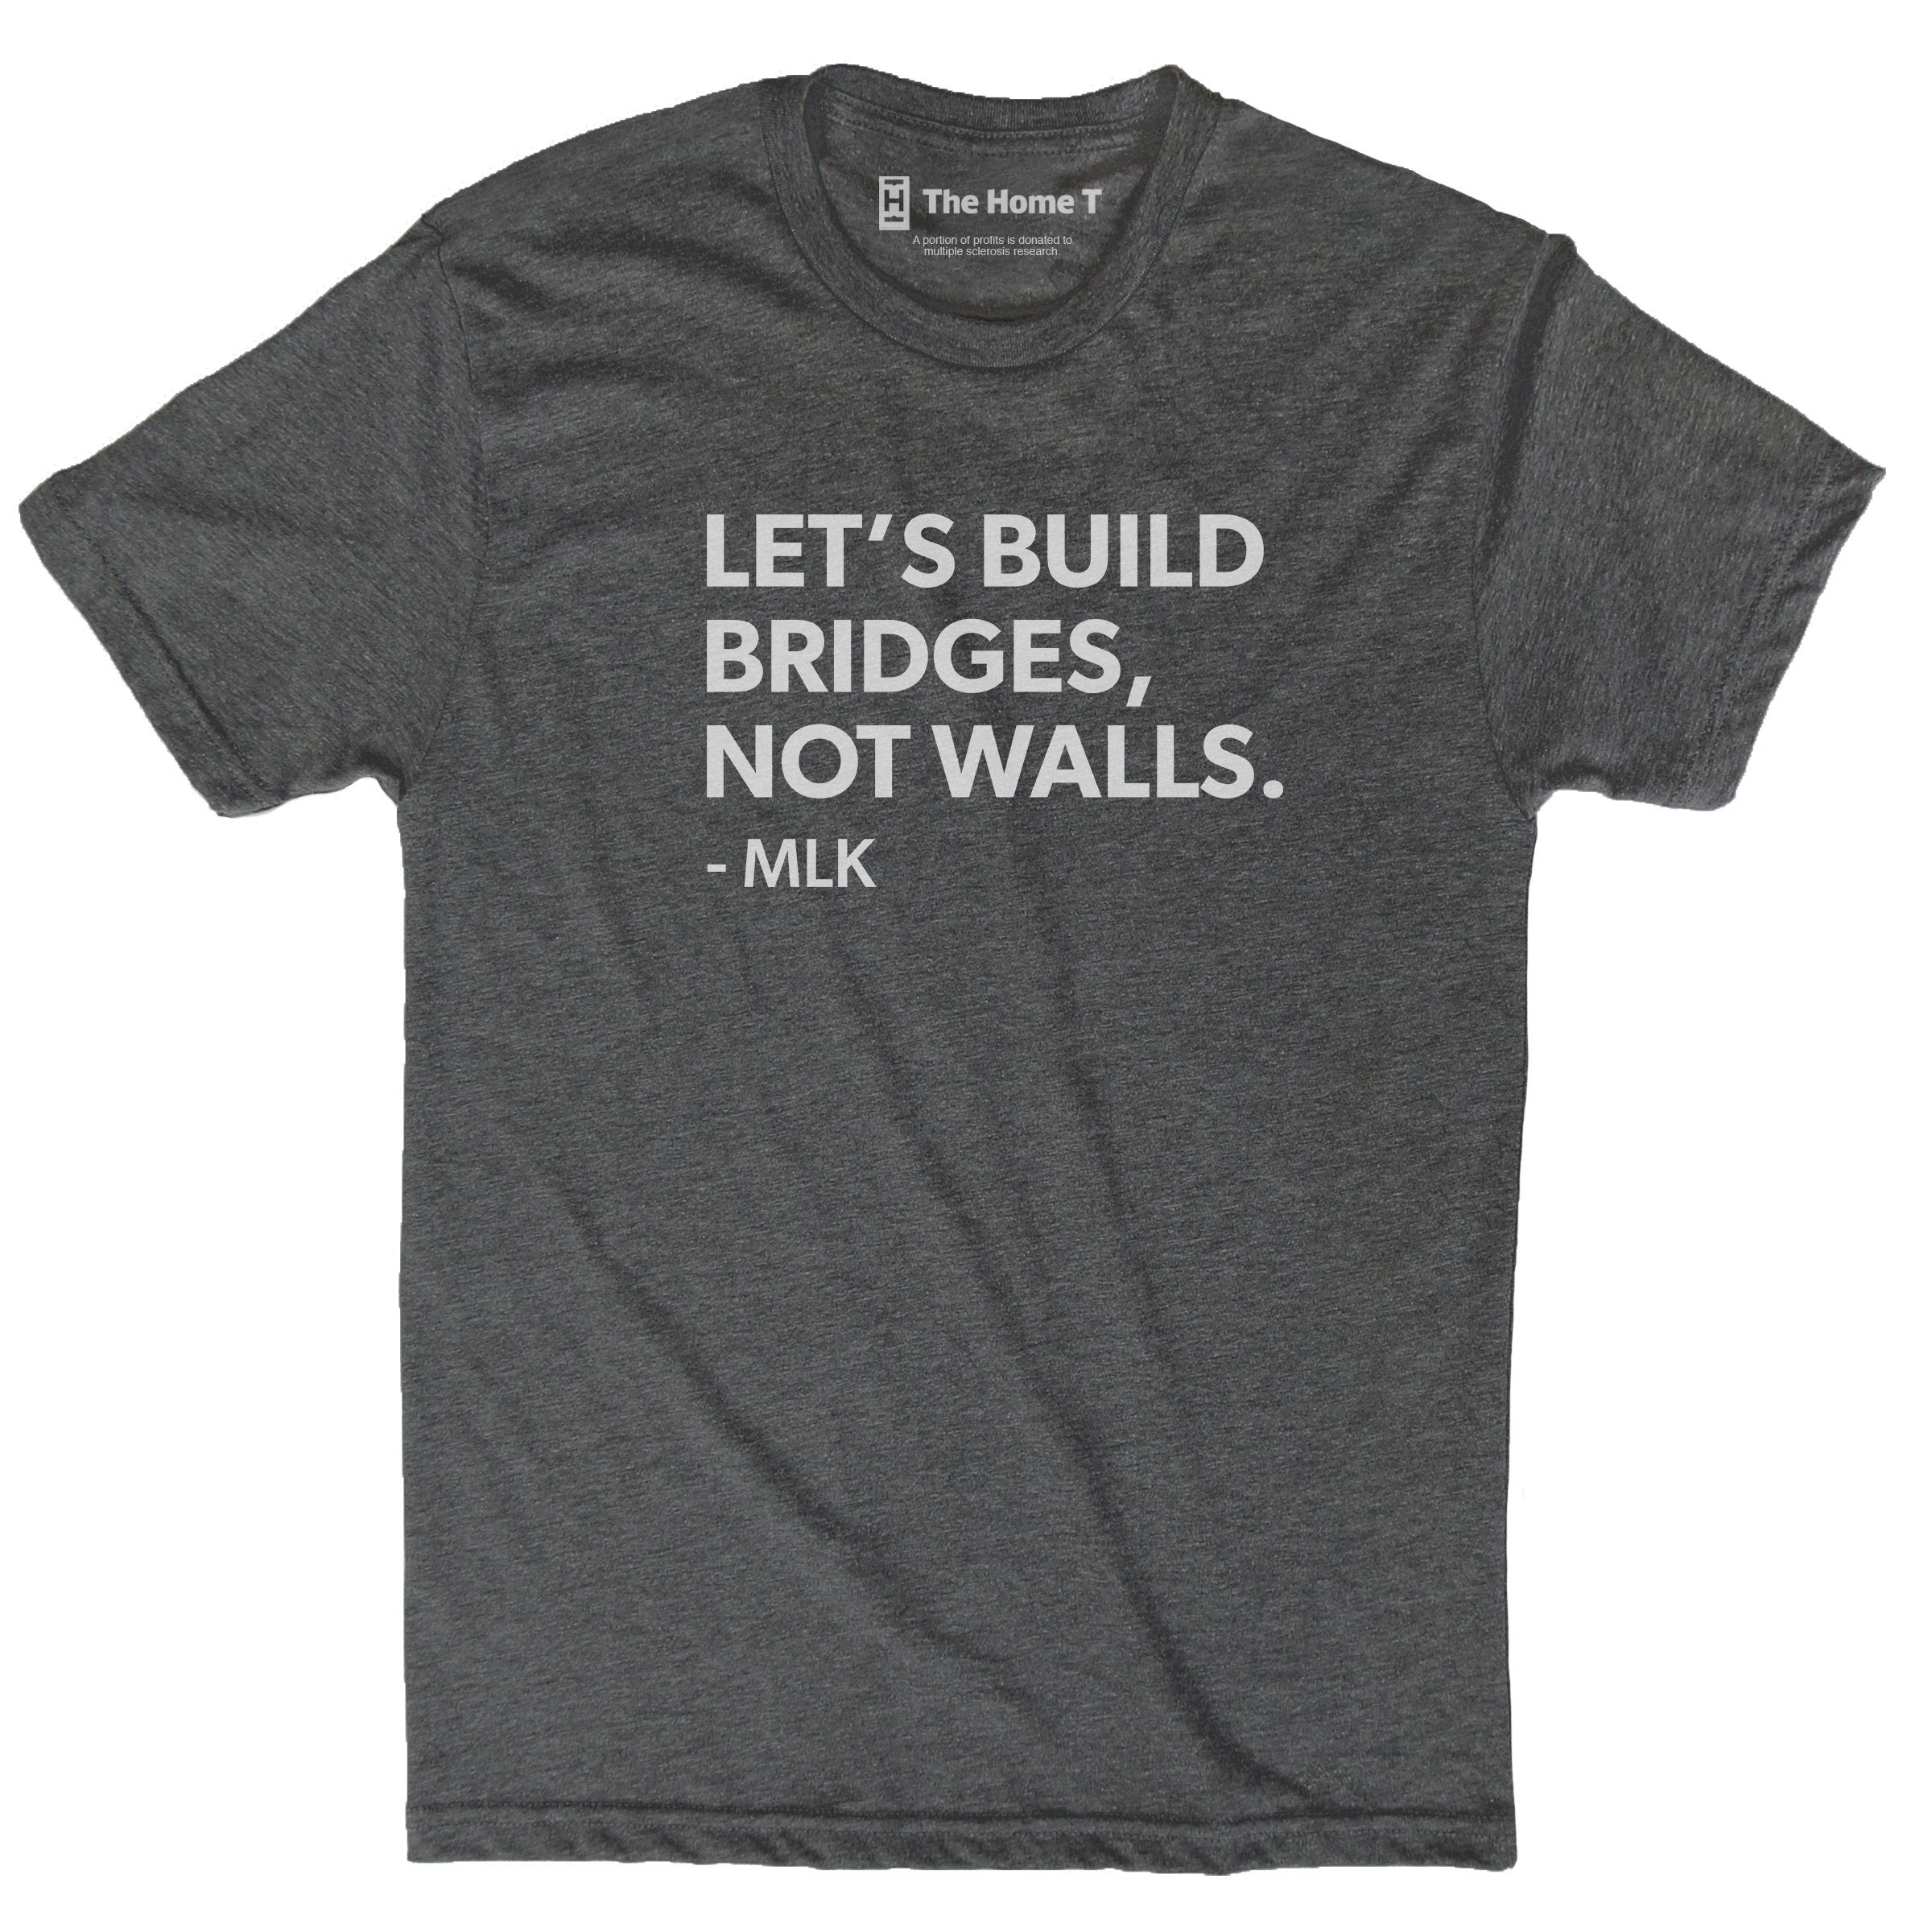 Let's build bridges, not walls. -MLK Dark grey crew